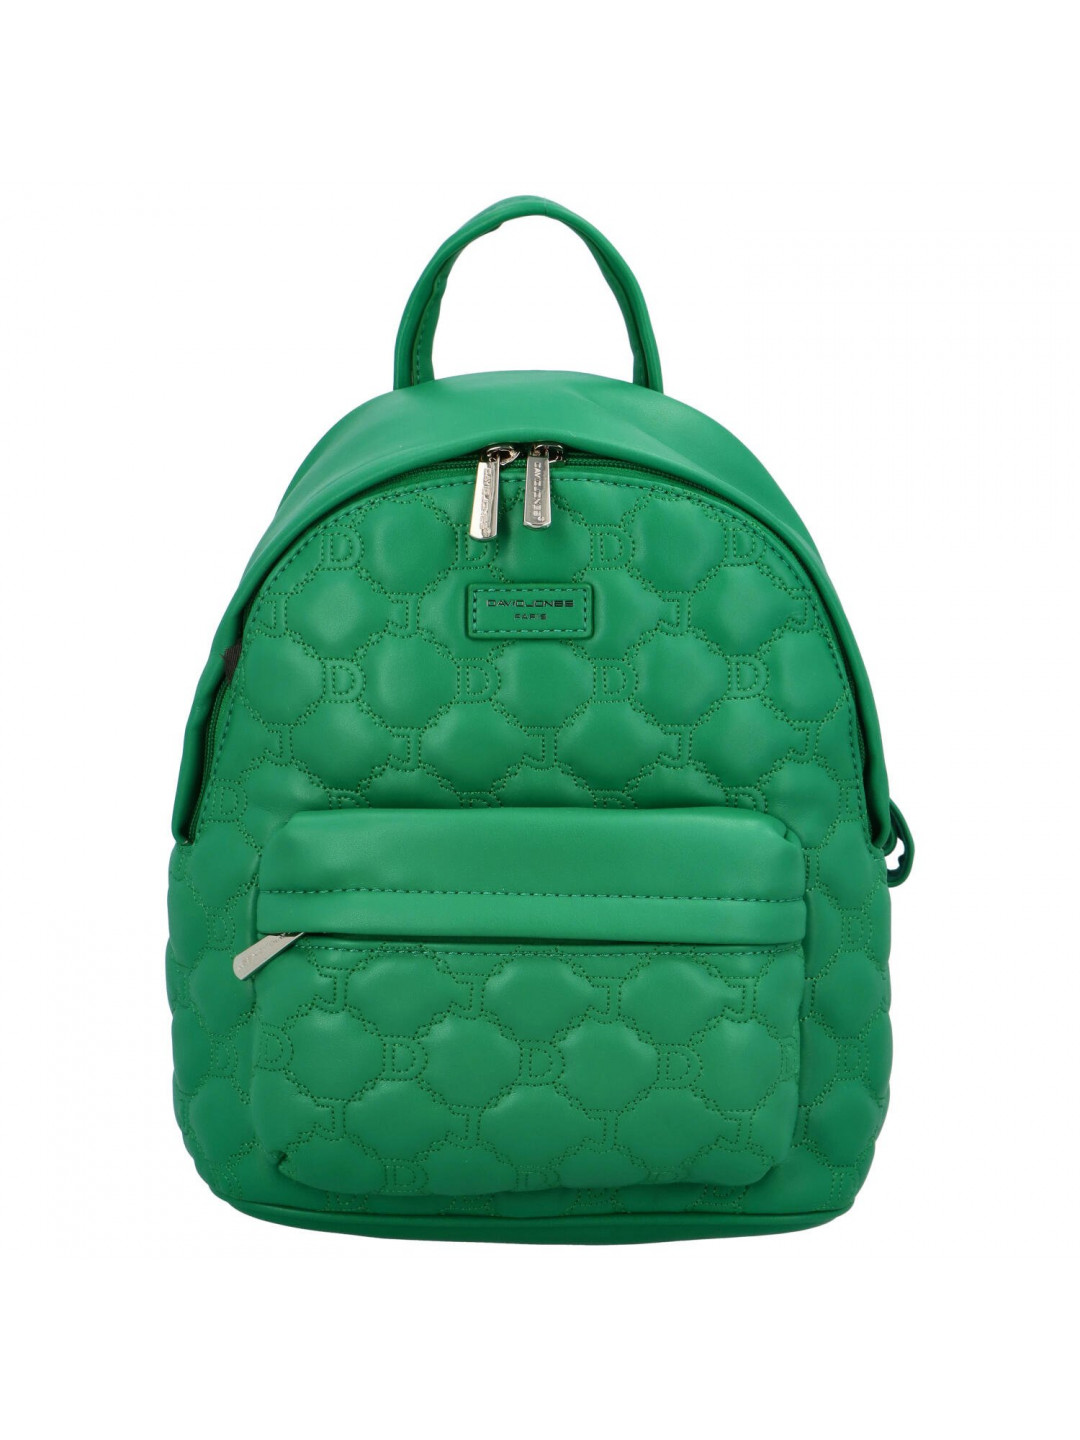 Trendový dámský koženkový batoh Danai zelená